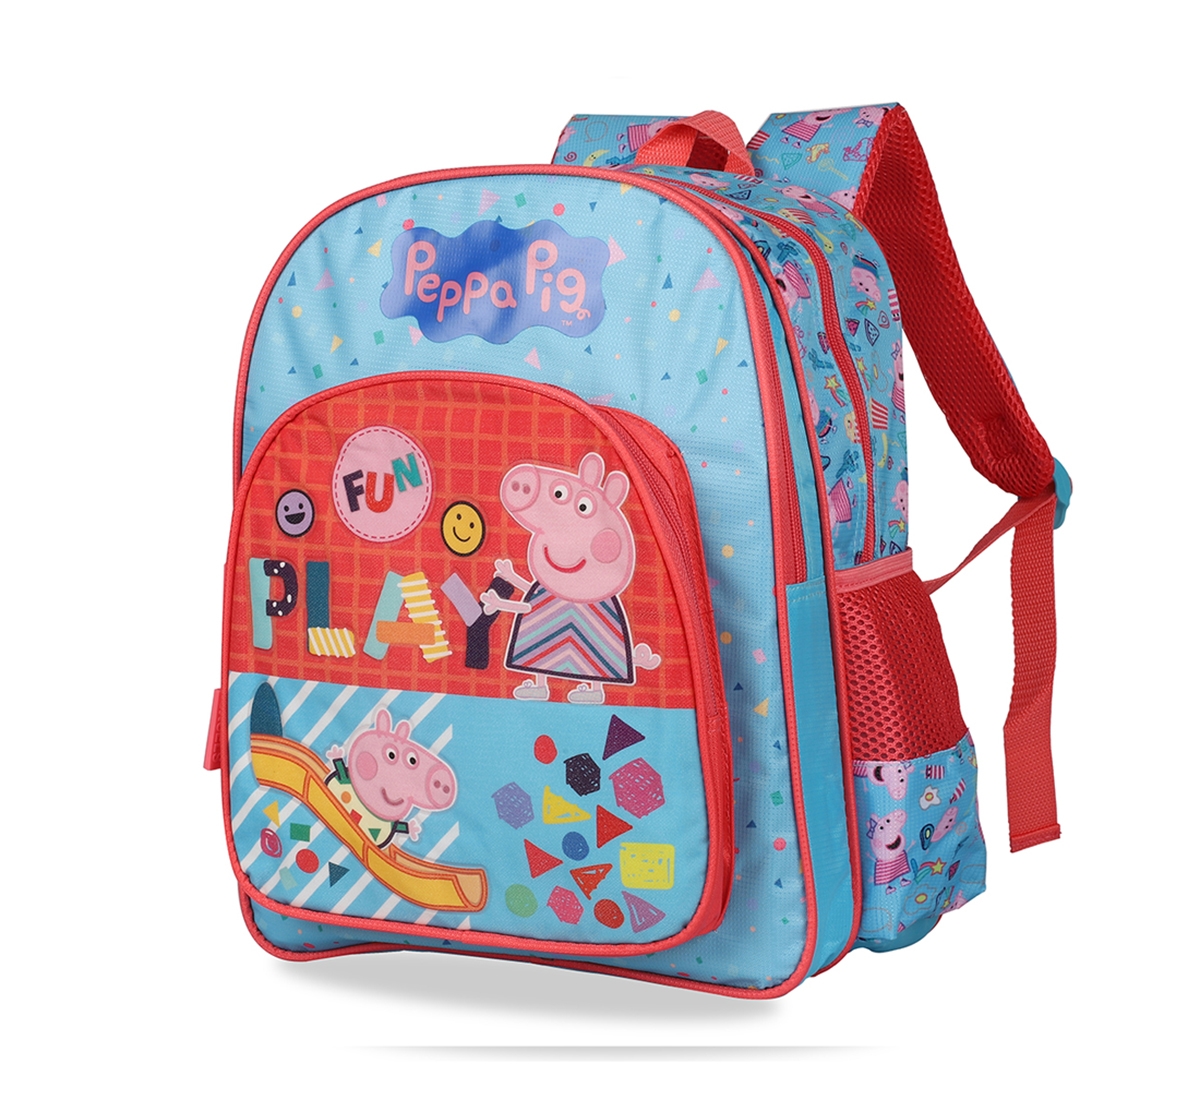 Peppa Pig |  Peppa Pig Fun Play School Bag 41 Cm for Kids age 7Y+  1